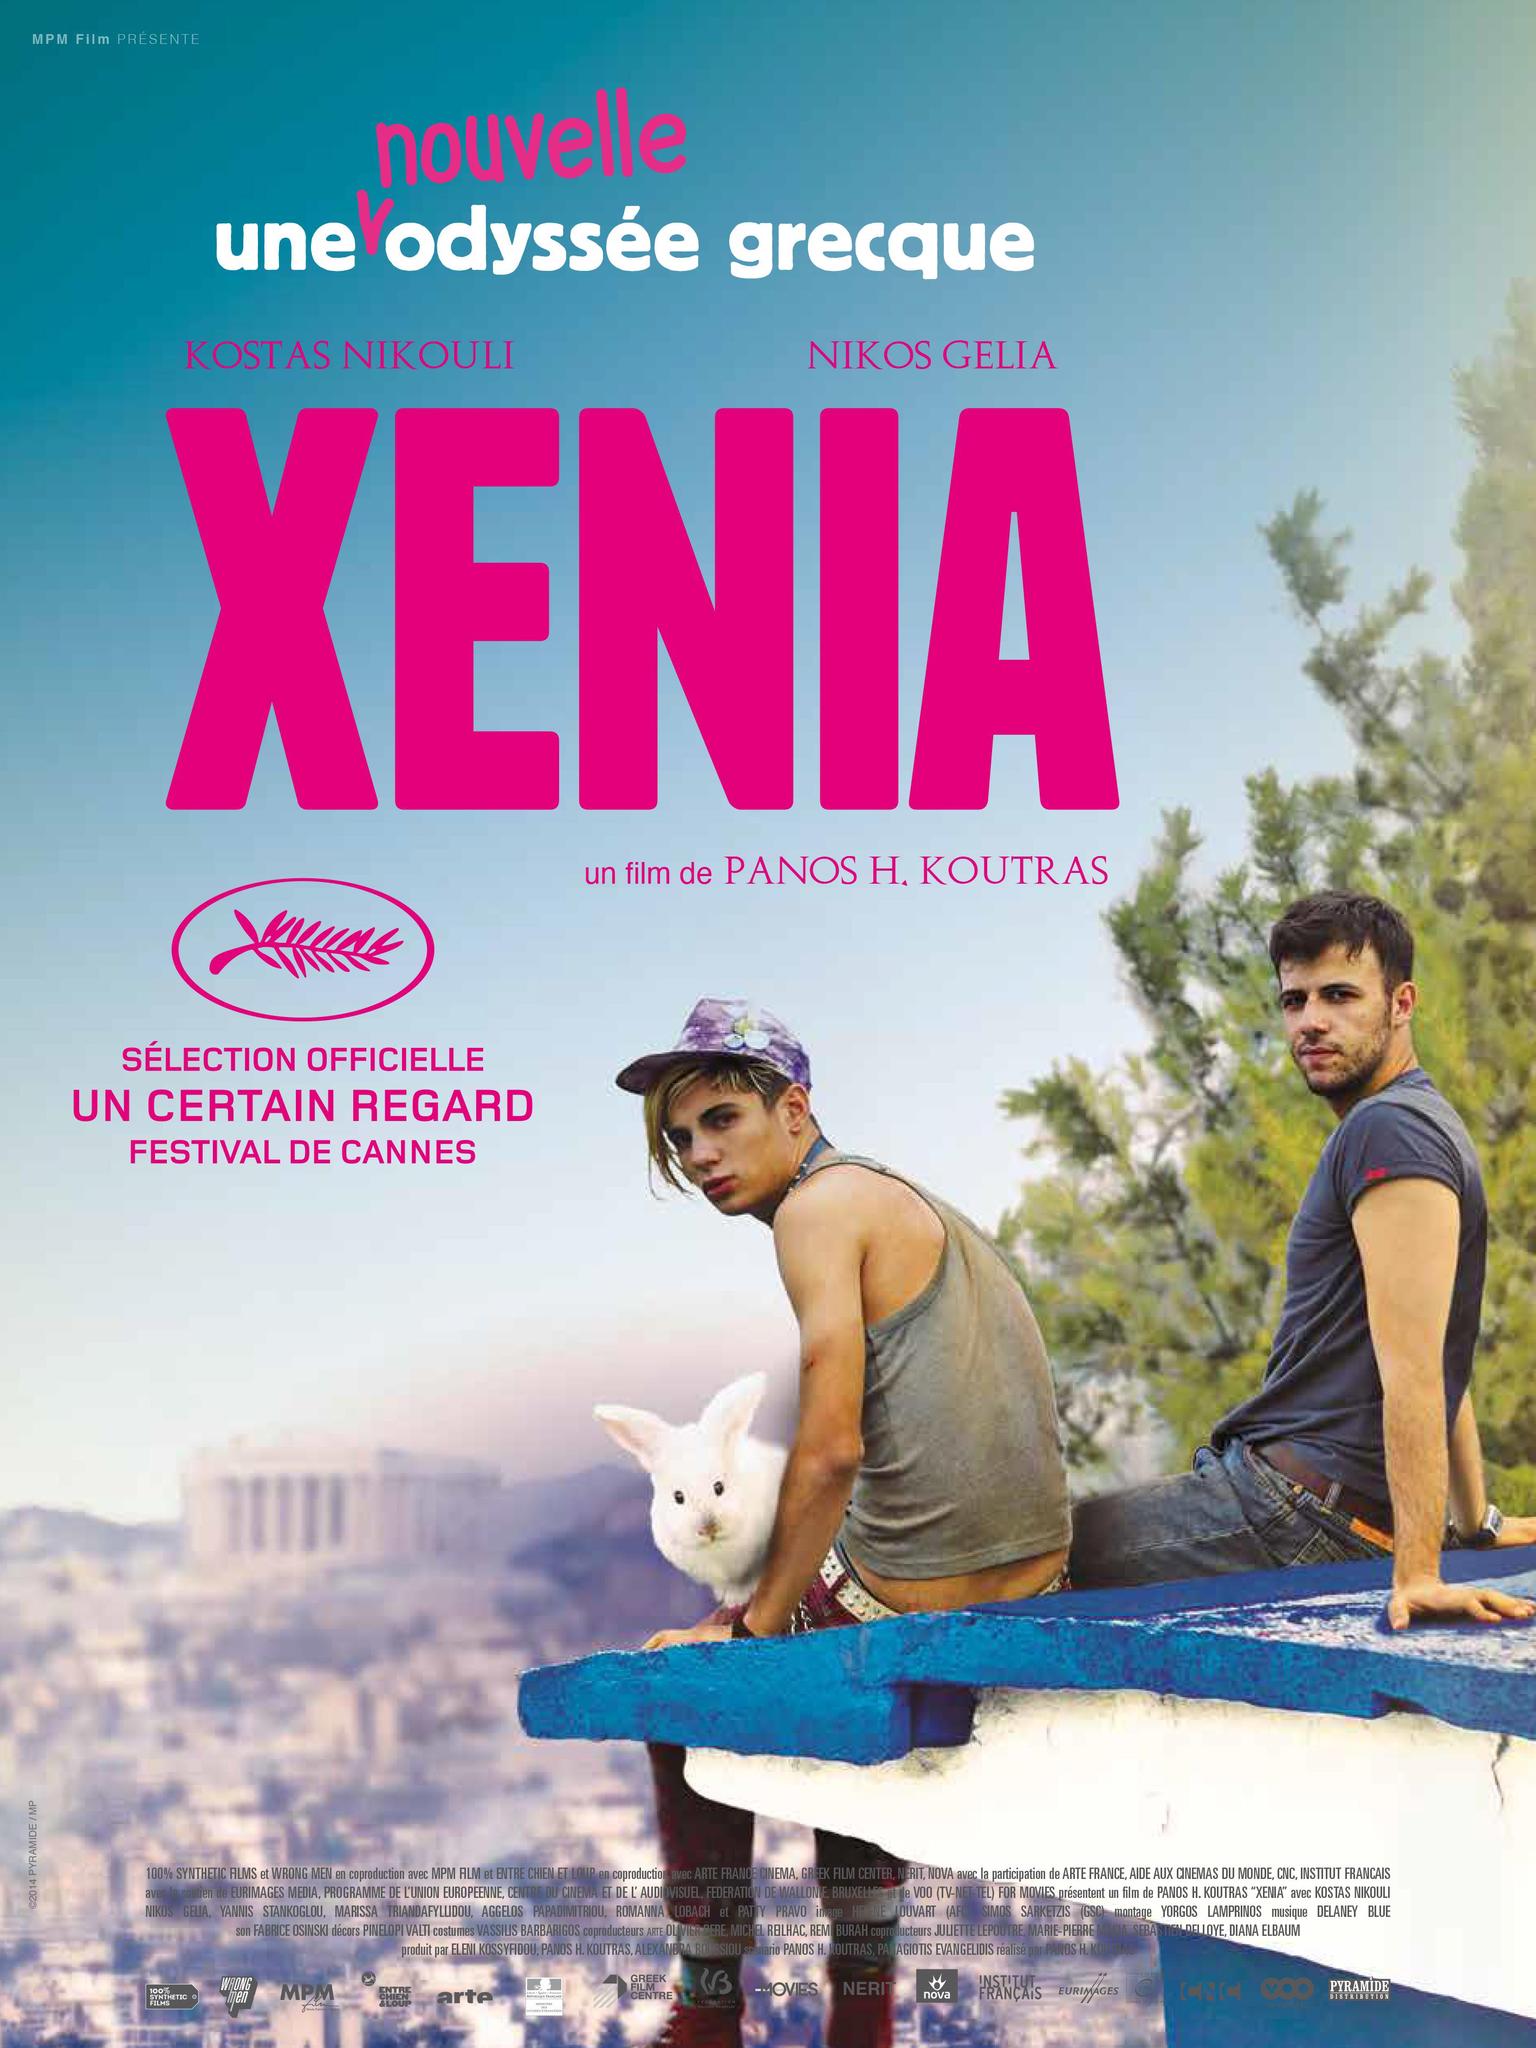 Still of Kostas Nikouli and Nikos Gelia in Xenia (2014)